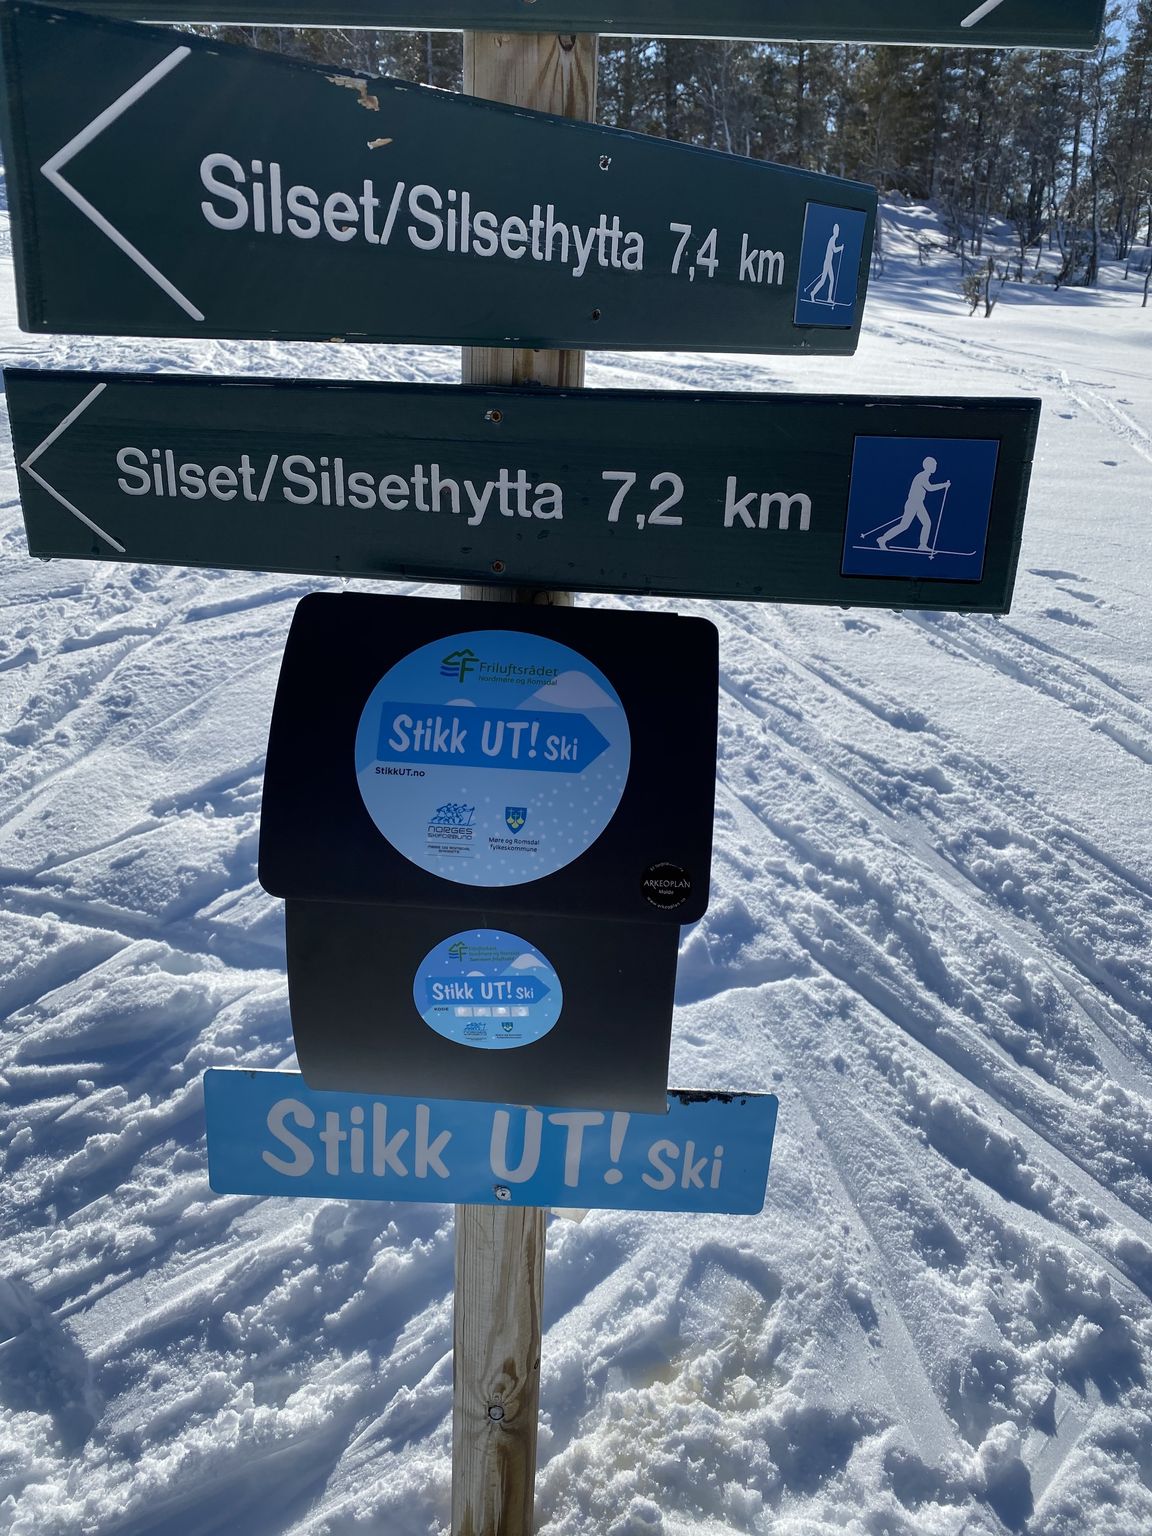 Stikk_UT__ski_fursetfjellet-_uten_kode.jpg